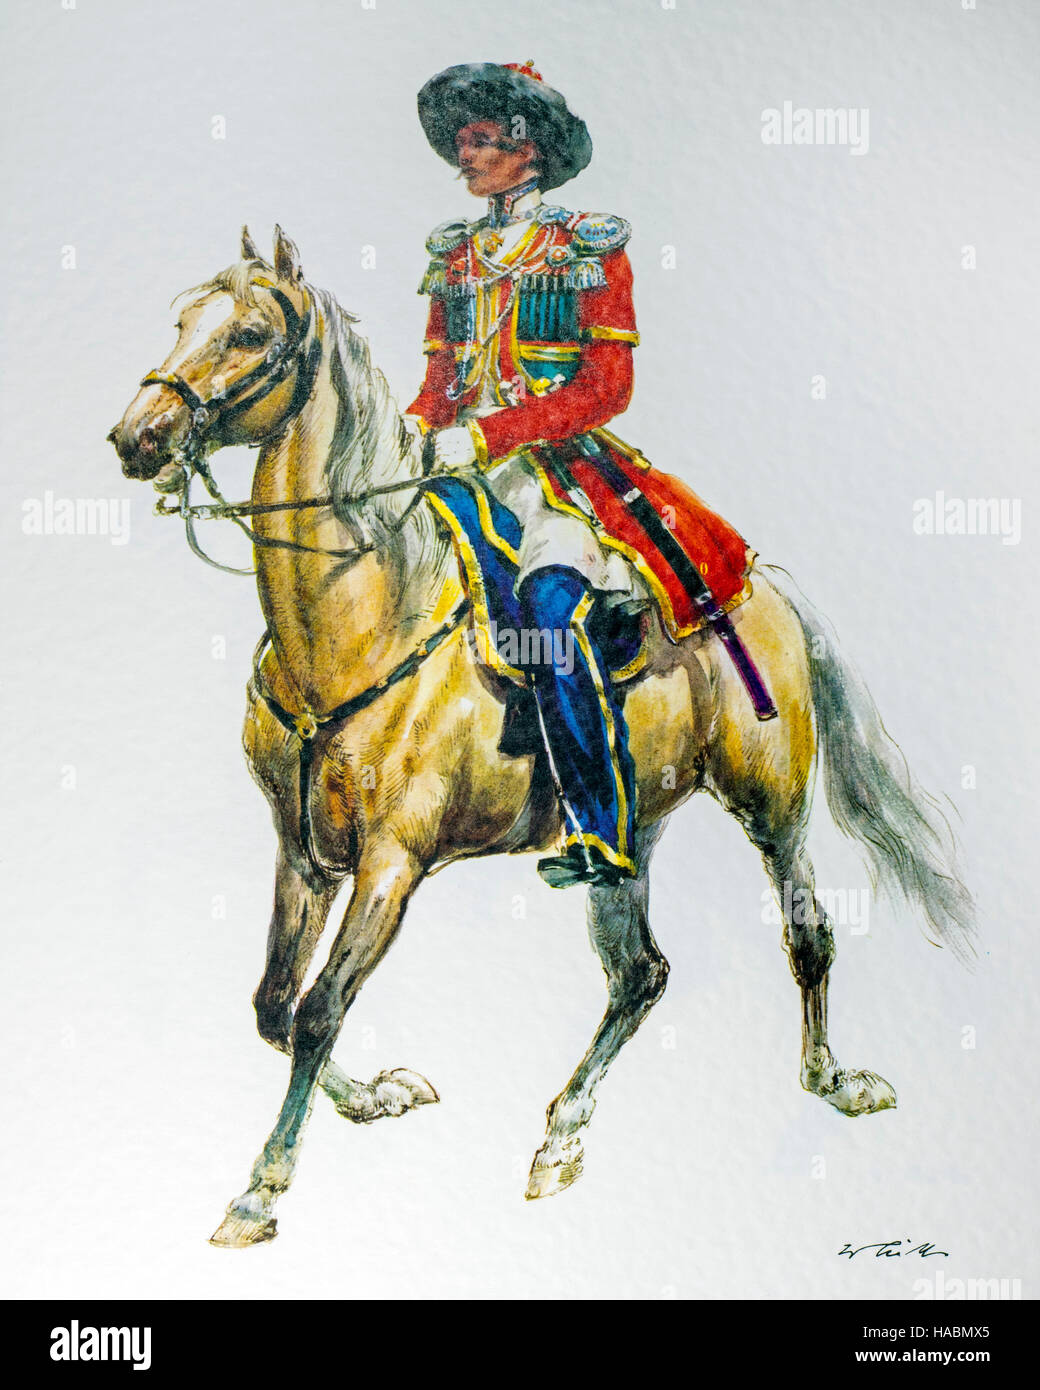 Offizier zu Pferd des russischen Reiches in 1835 Parade Kosaken uniform Stockfoto